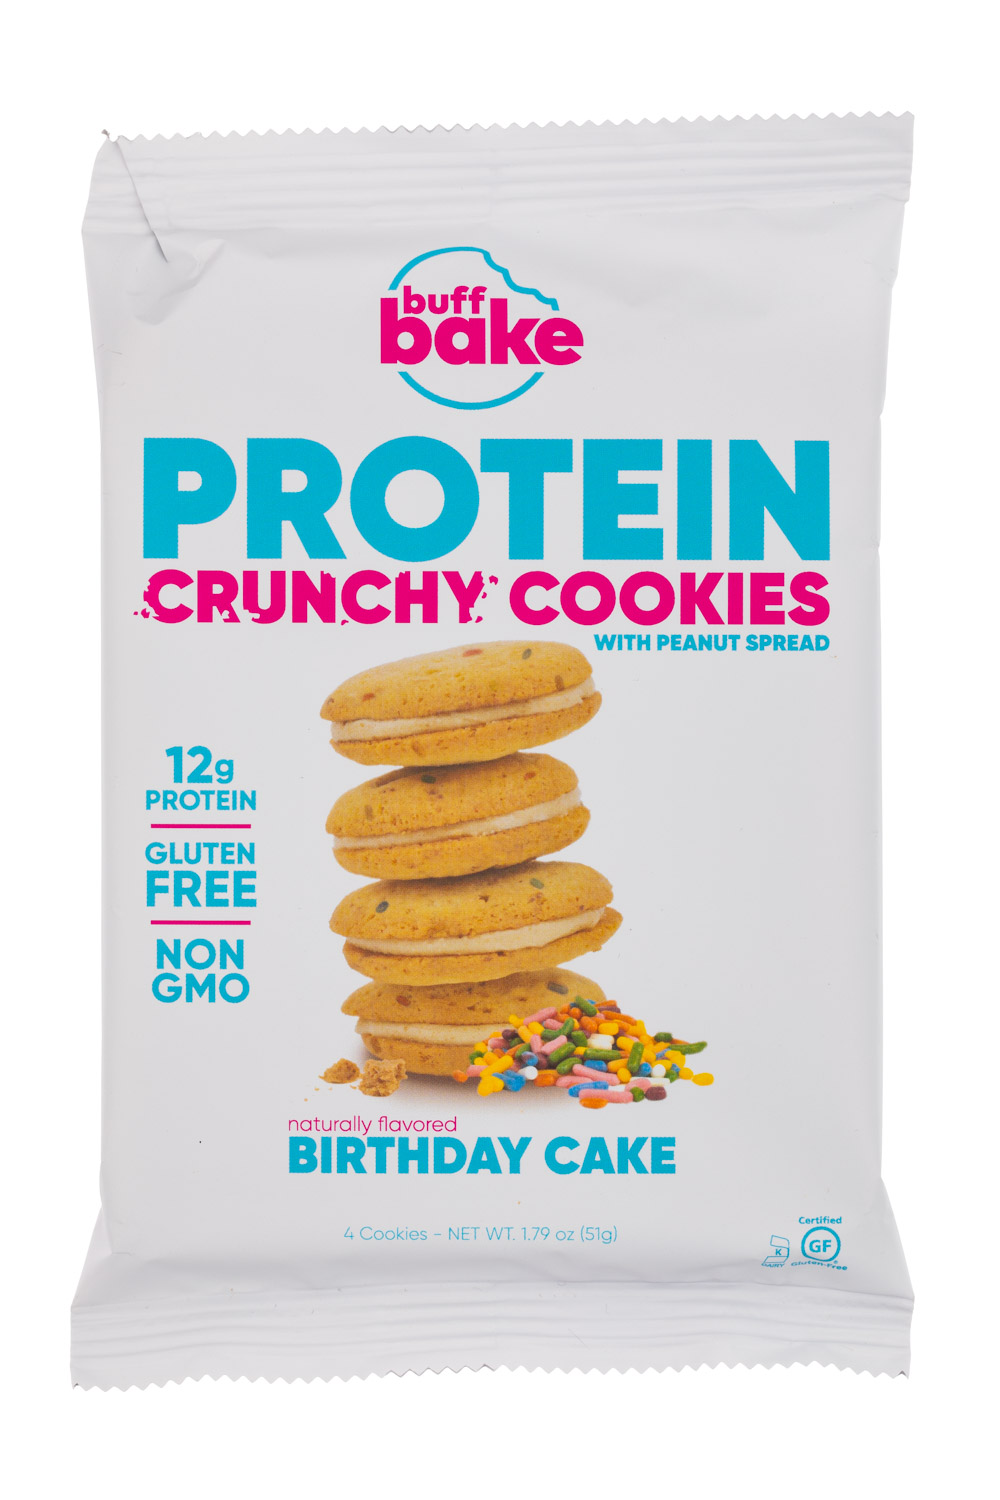 Birthday Cake - Crunchy